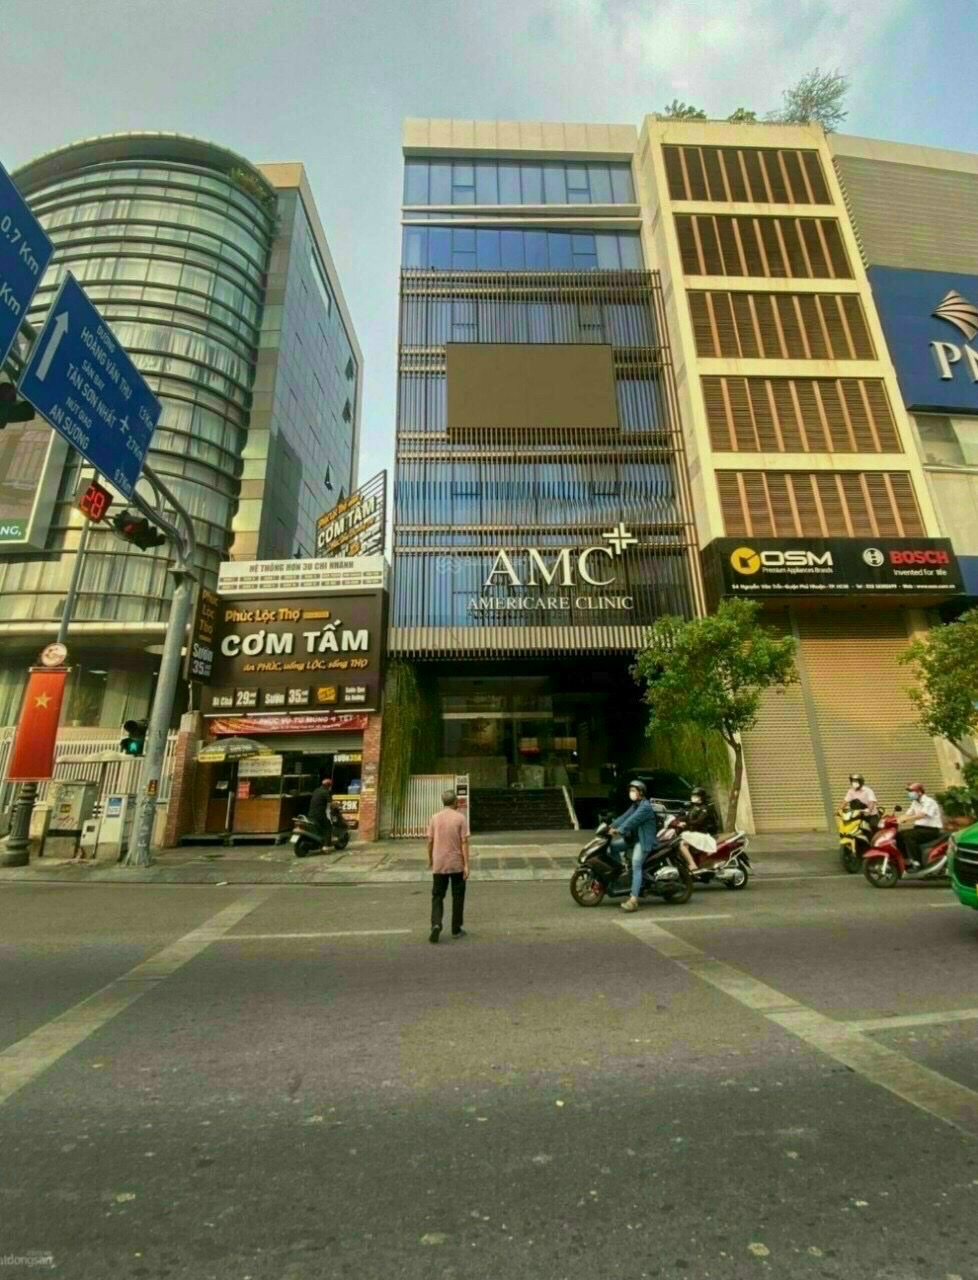 Bán gấp mặt tiền Trần Quang Khải, góc Hai Bà Trưng, Giá chỉ 400 triệu/m2, đang cho thuê ngân hàng